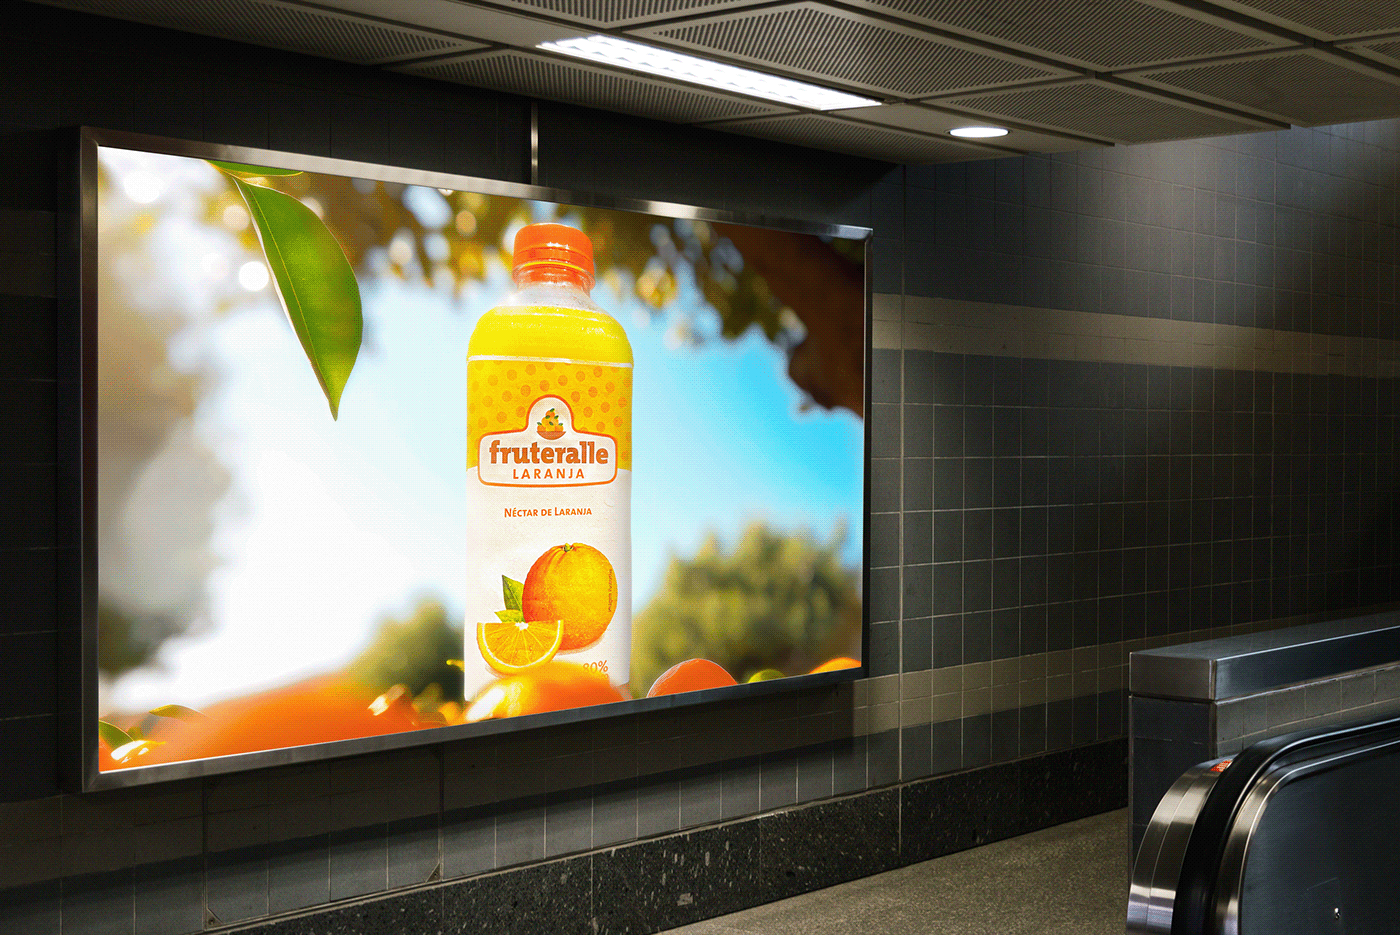 soft drink drink Orange Juice manipulation retouch social media banner